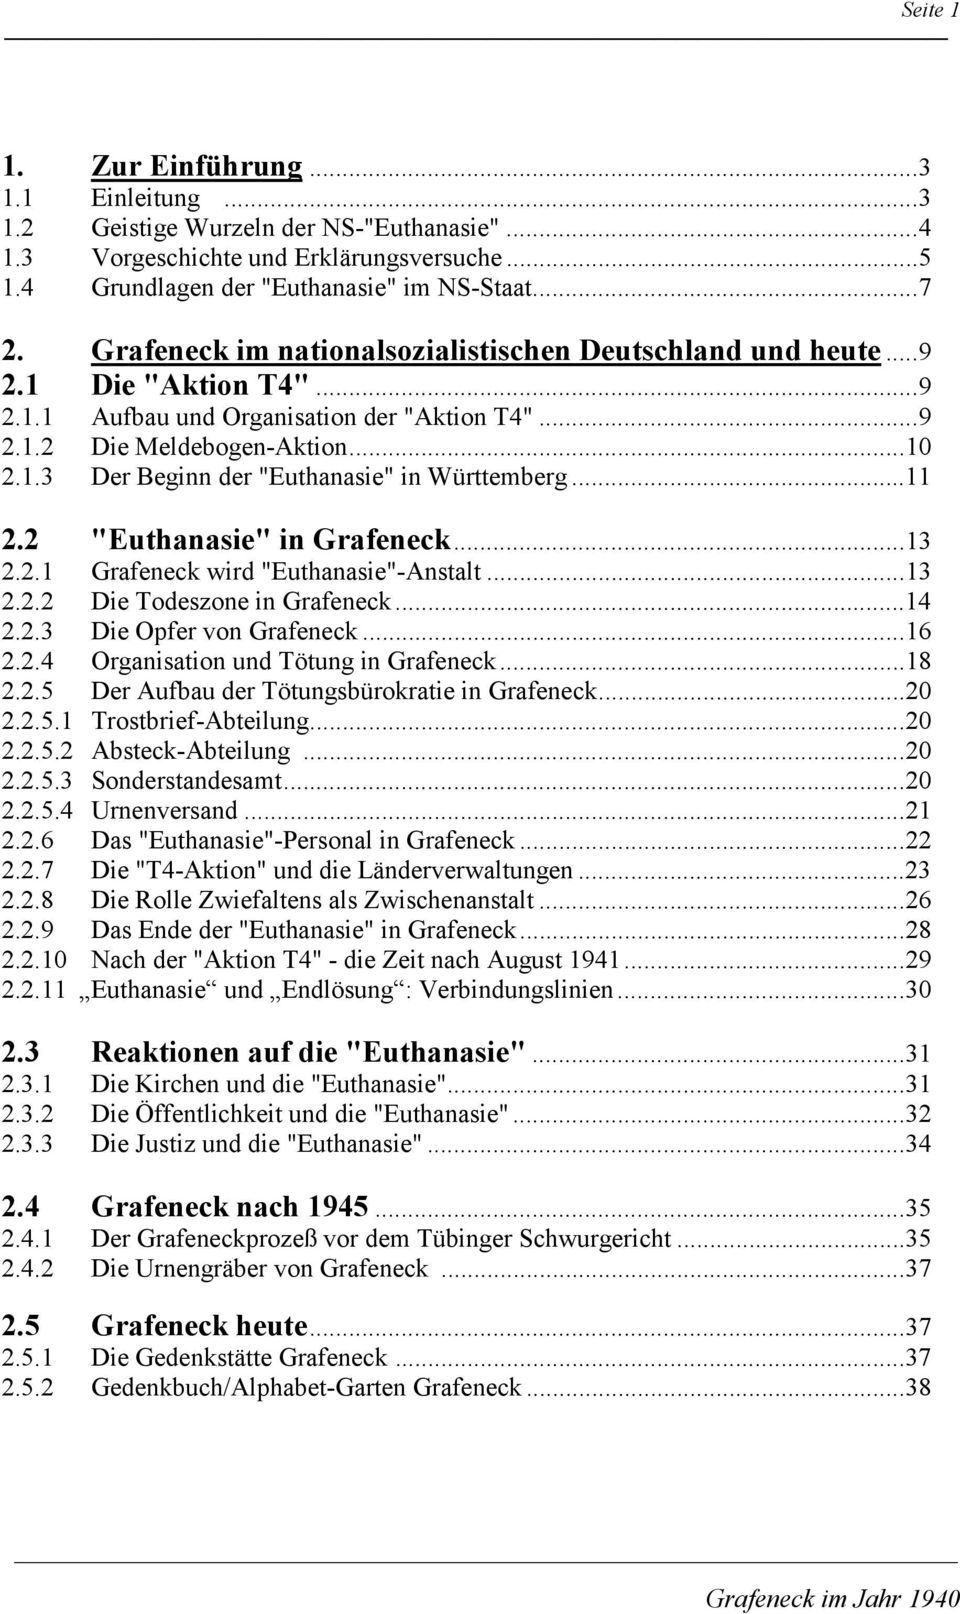 ..11 2.2 "Euthanasie" in Grafeneck...13 2.2.1 Grafeneck wird "Euthanasie"-Anstalt...13 2.2.2 Die Todeszone in Grafeneck...14 2.2.3 Die Opfer von Grafeneck...16 2.2.4 Organisation und Tötung in Grafeneck.